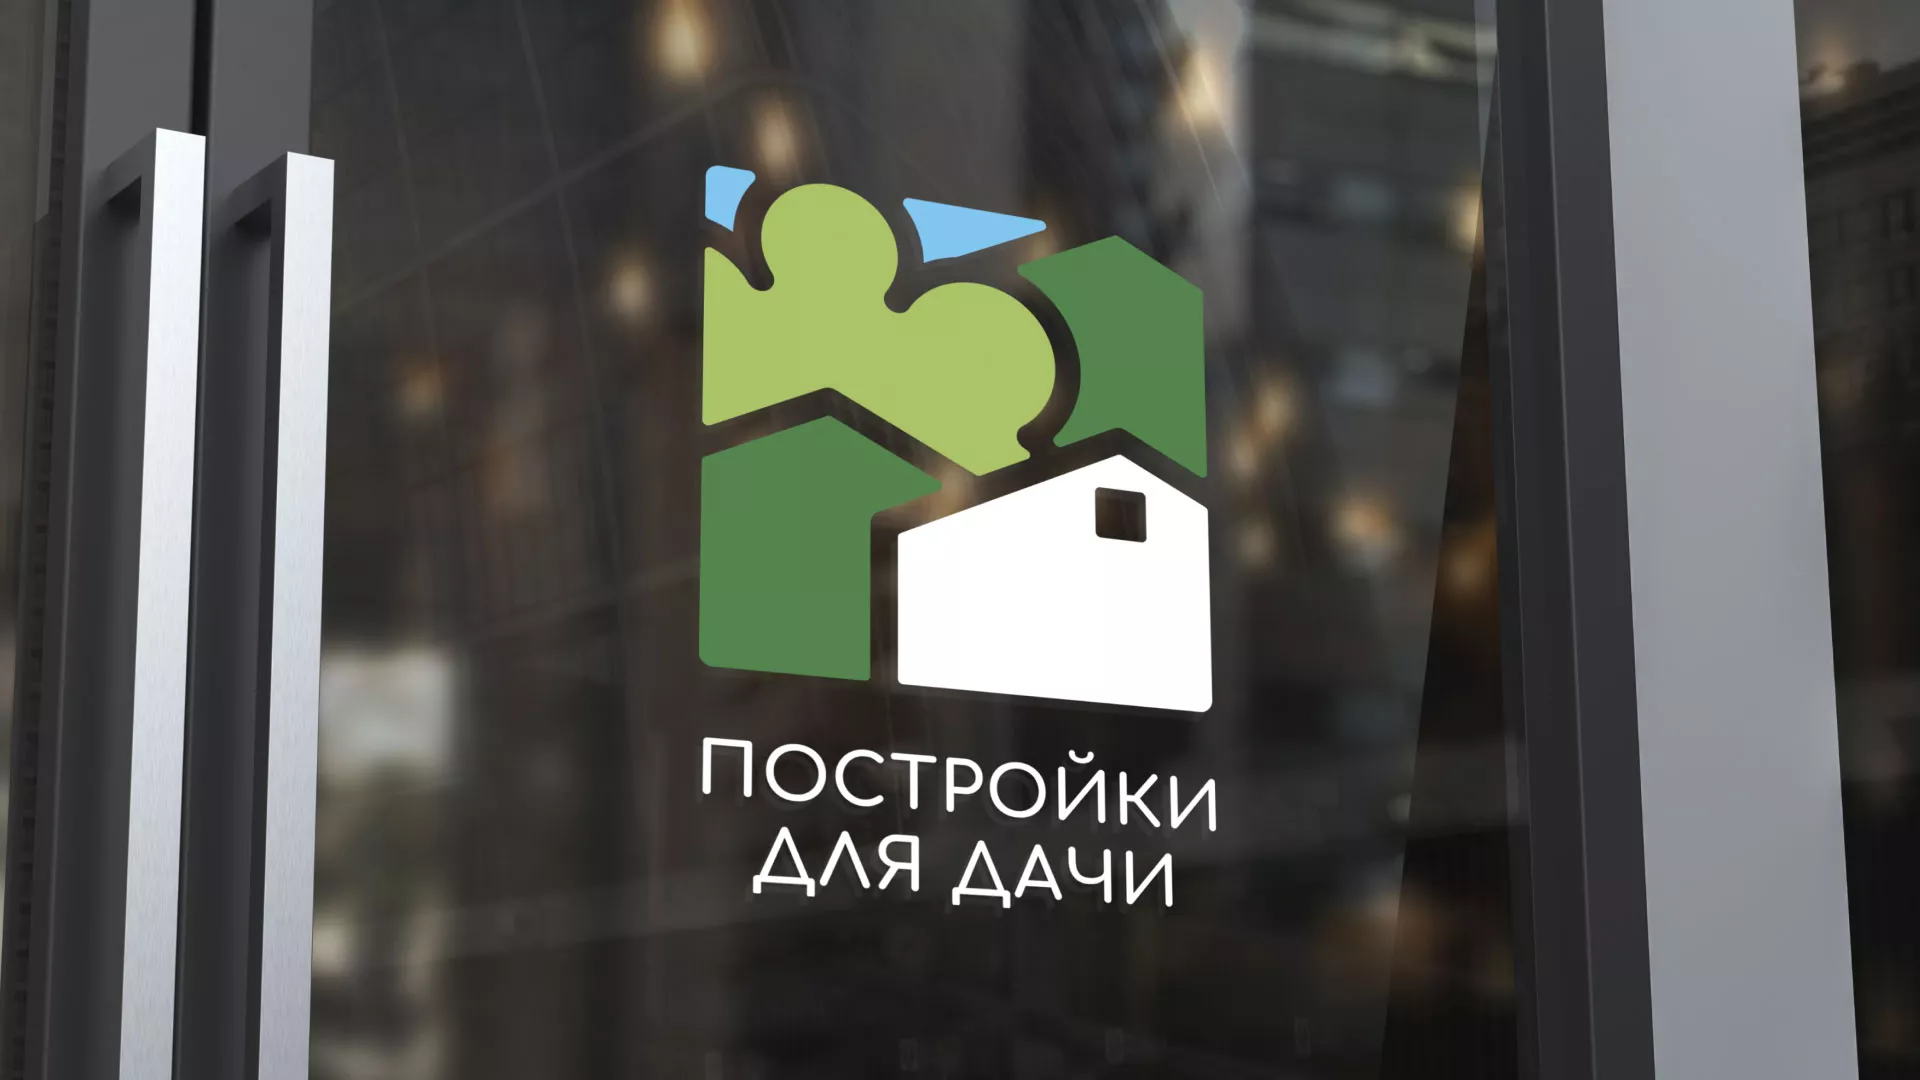 Разработка логотипа в Кольчугино для компании «Постройки для дачи»